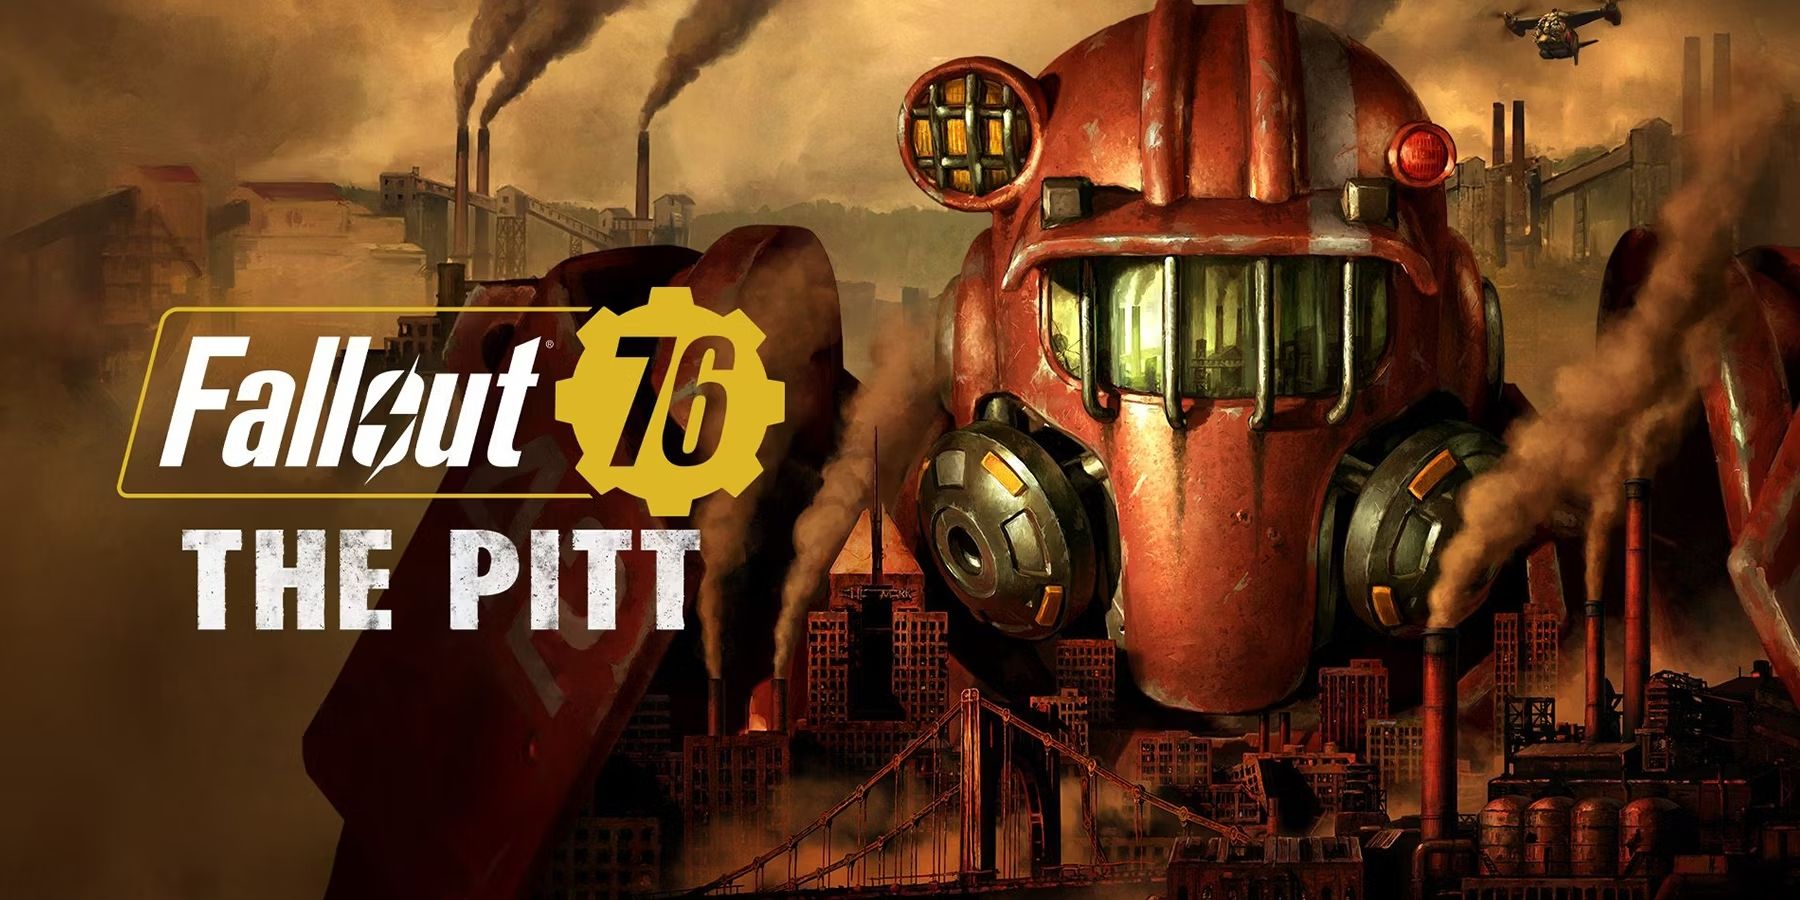 Fallout cumple 25 años: Fallout 76 gratis, recompensas exclusivas, eventos especiales y más